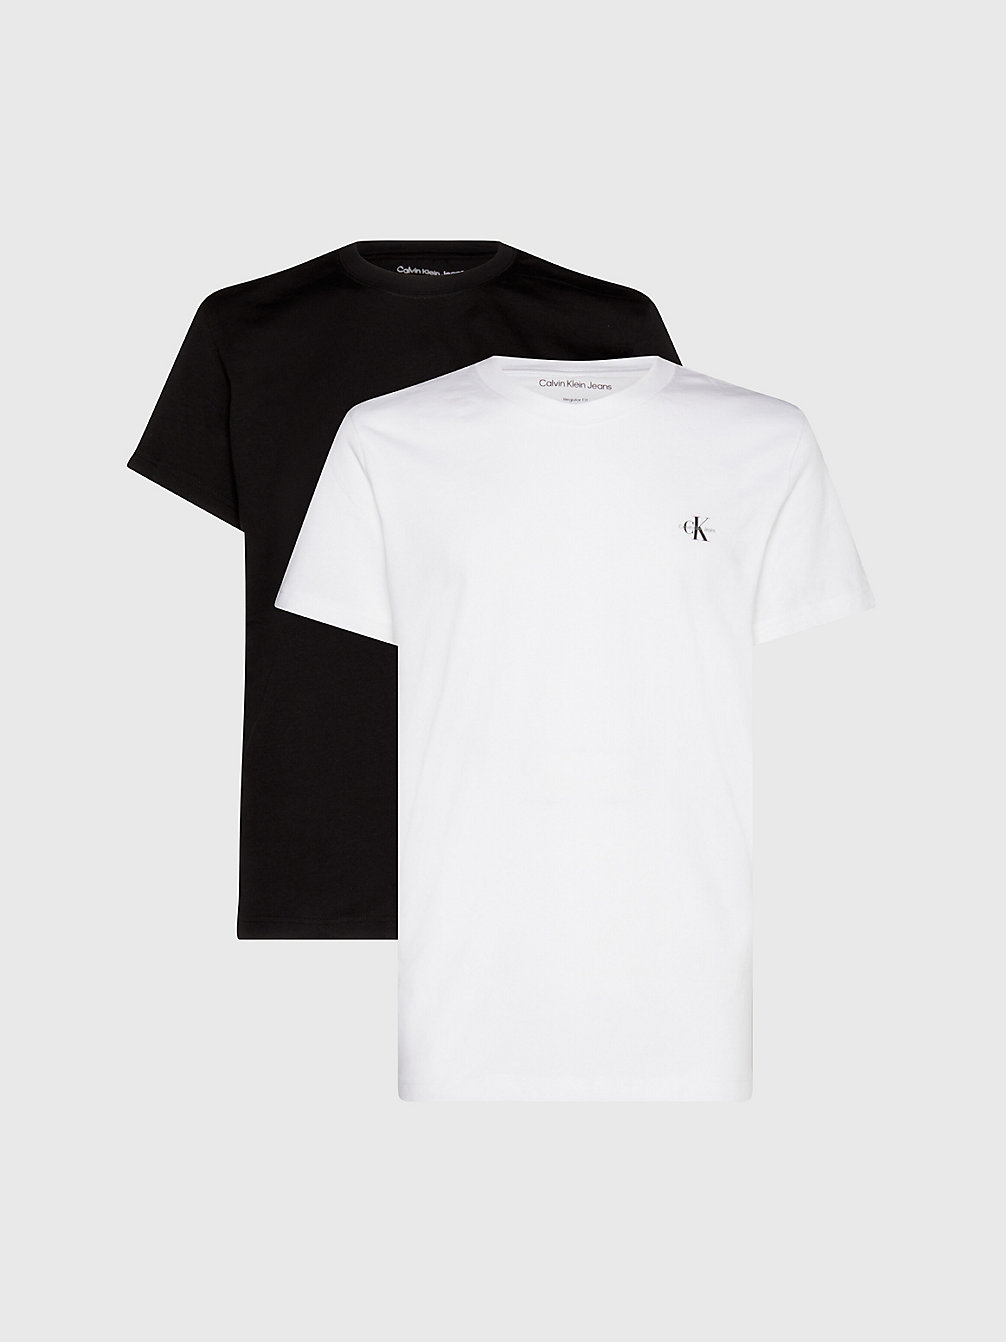 T-Shirt Con Monogramma In Confezione Da 2 > CK BLACK/BRIGHT WHITE > undefined uomo > Calvin Klein